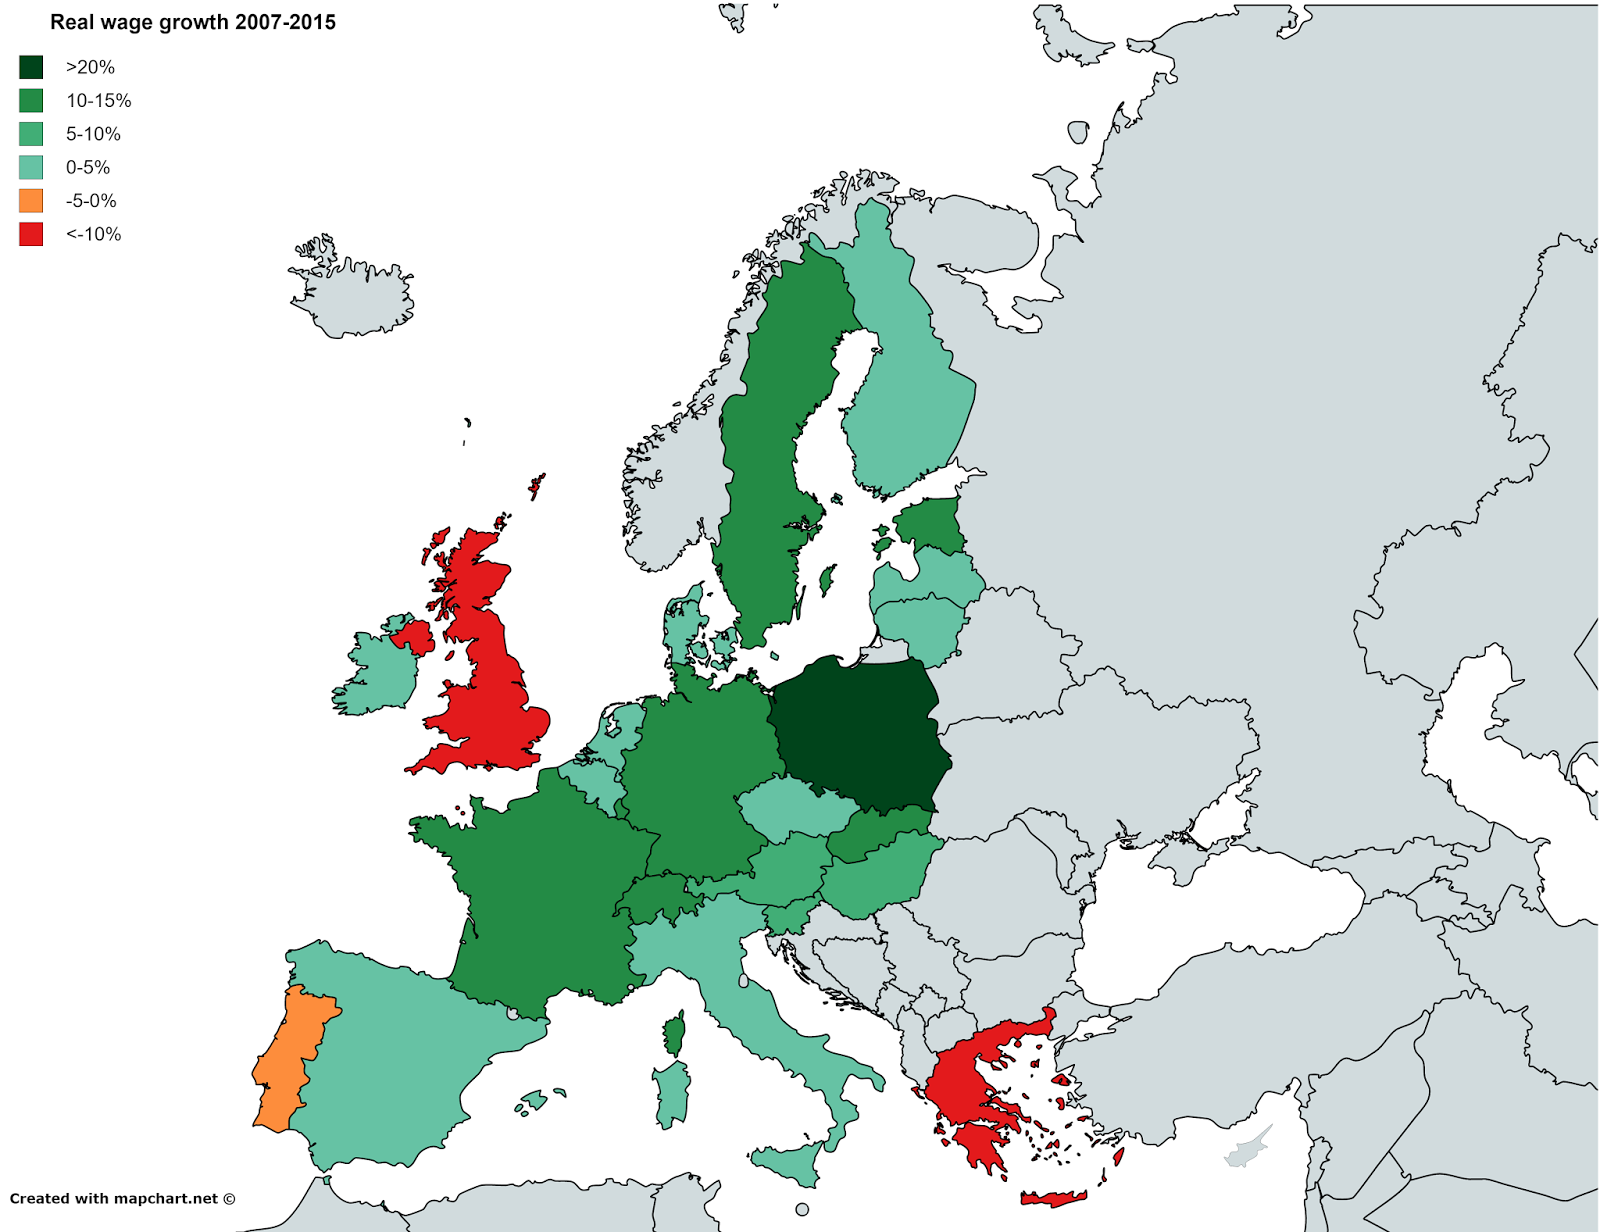 aumento dei salari, mappa dell'Europa